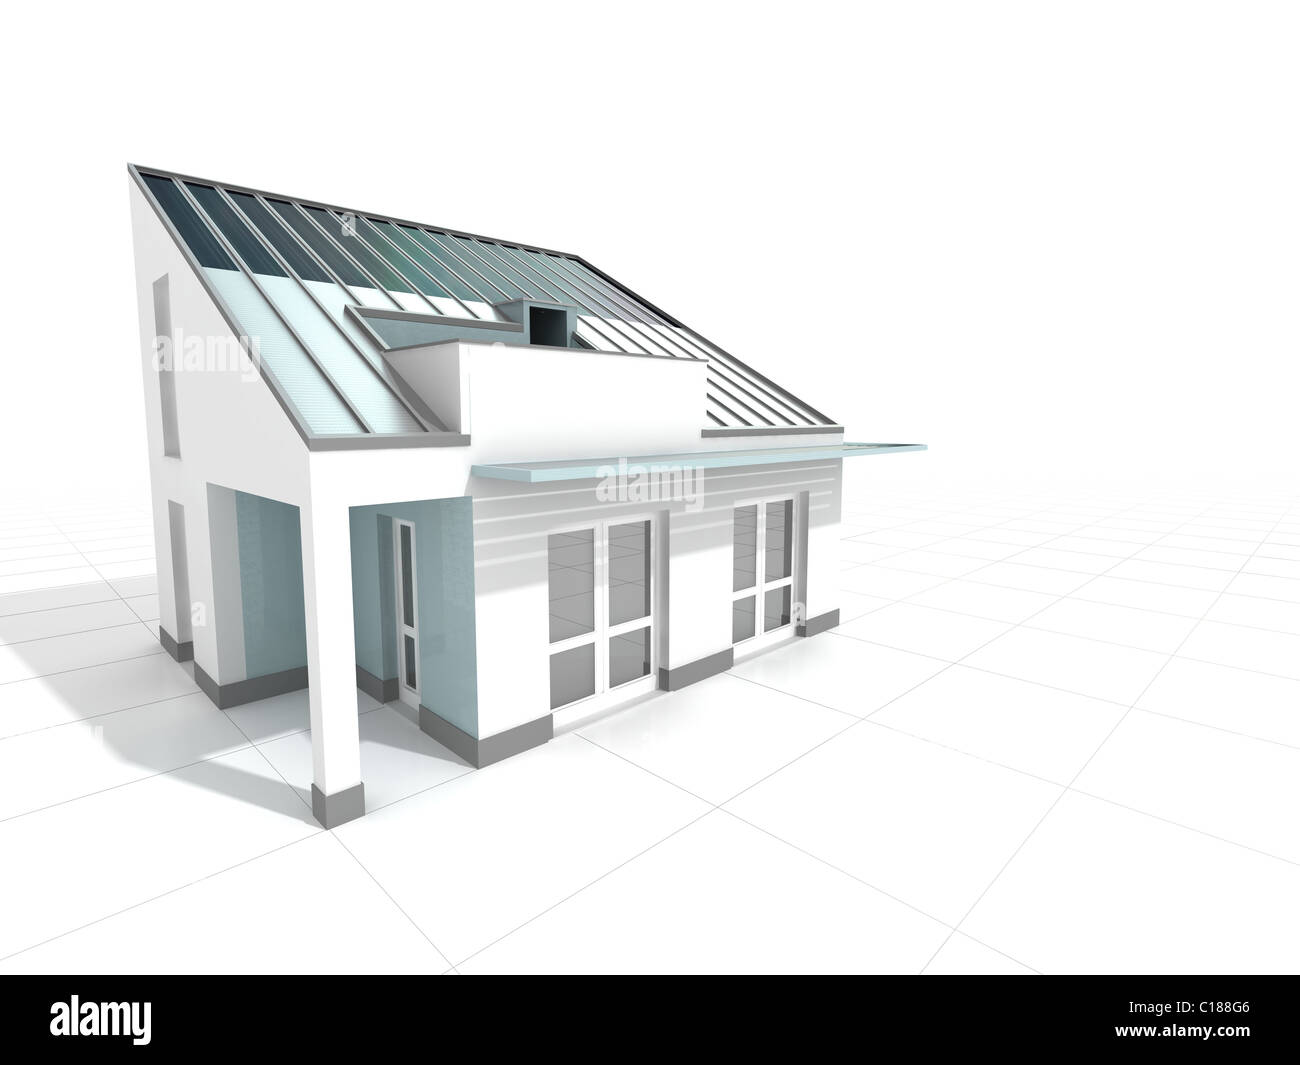 Ammenda 3d illustrazione della casa moderna con pannello solare sul tetto Foto Stock